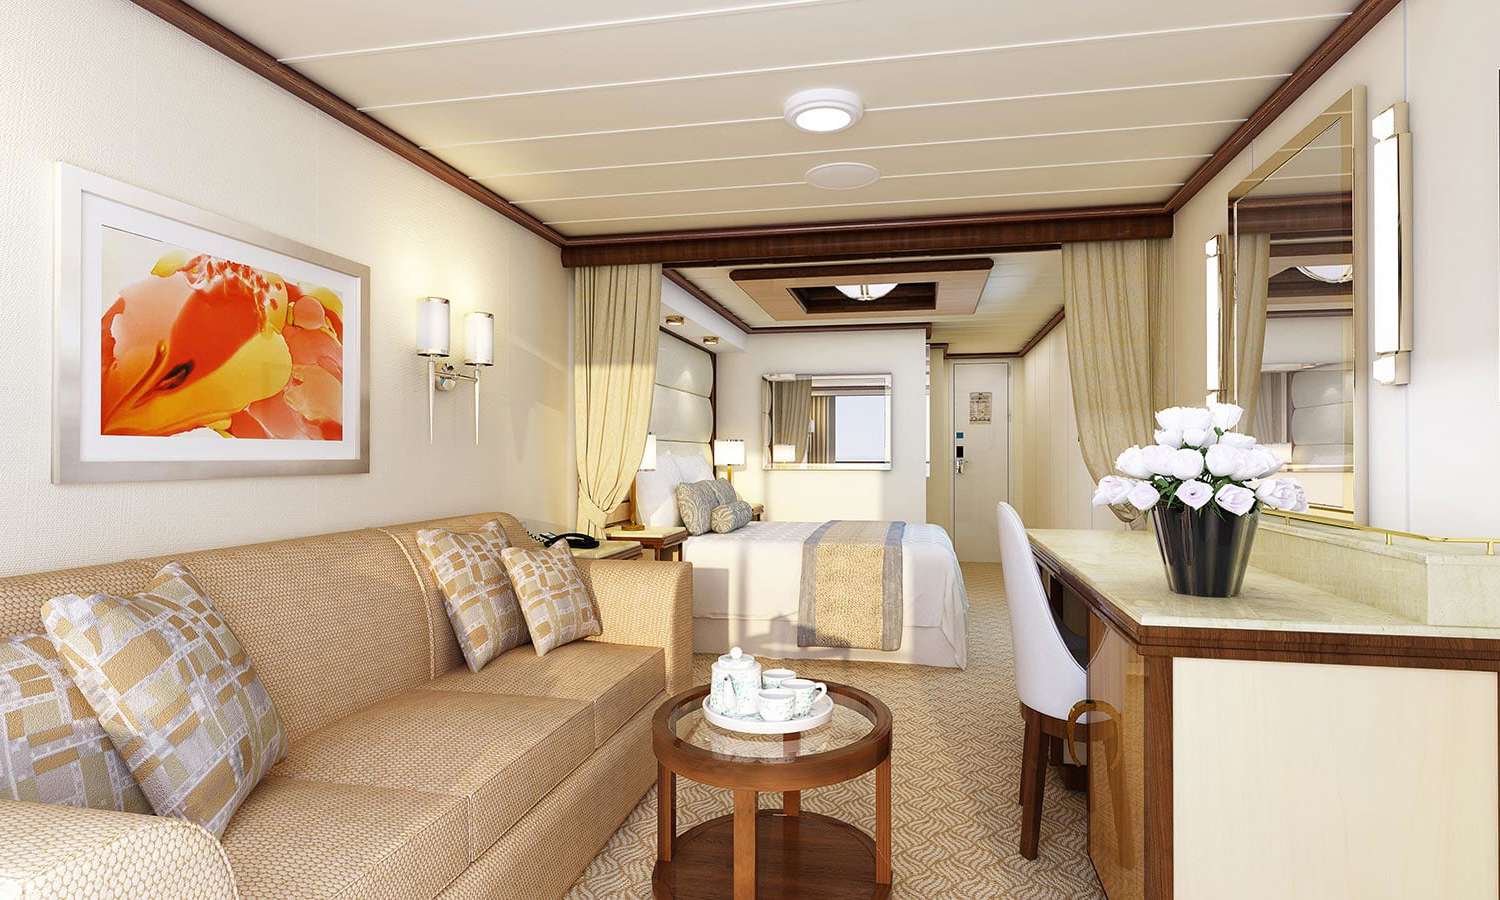 royal princess cruise ship rooms